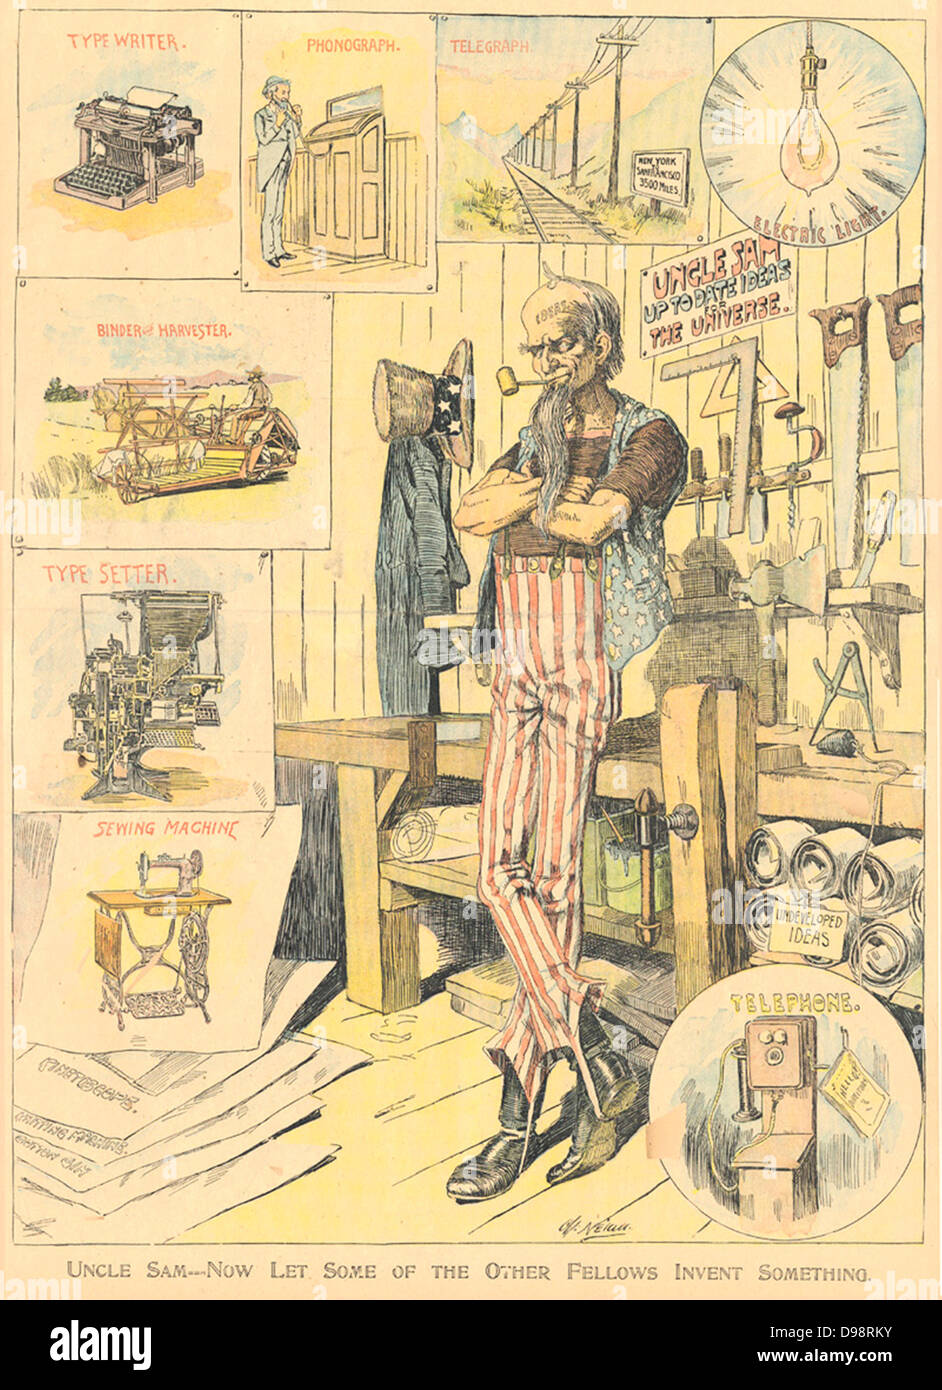 Uncle Sam -- lassen Sie uns jetzt einige der anderen Fellows etwas Erfinden von Charles Nelan, New York Herald, 9. Januar 1898. Farbe Sonntag Ergänzungen wurden wichtige Waffen in der Zeitung Kriege des späten neunzehnten Jahrhundert und viele empfohlene etwas chauvinistischen Kommentare wie diese Seite von Nelan. Stockfoto